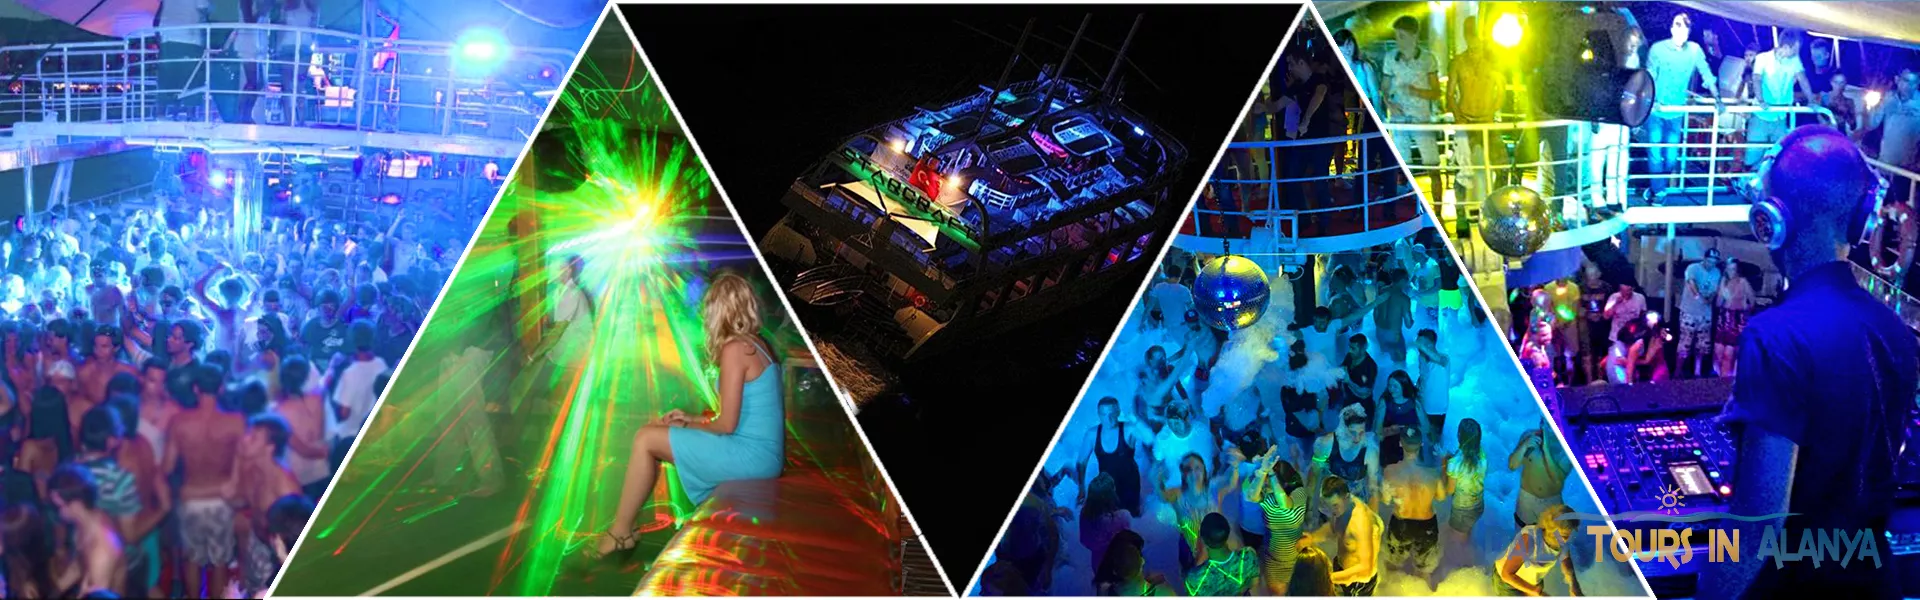 Ночная дискотека в Алании на яхте Старкрафт